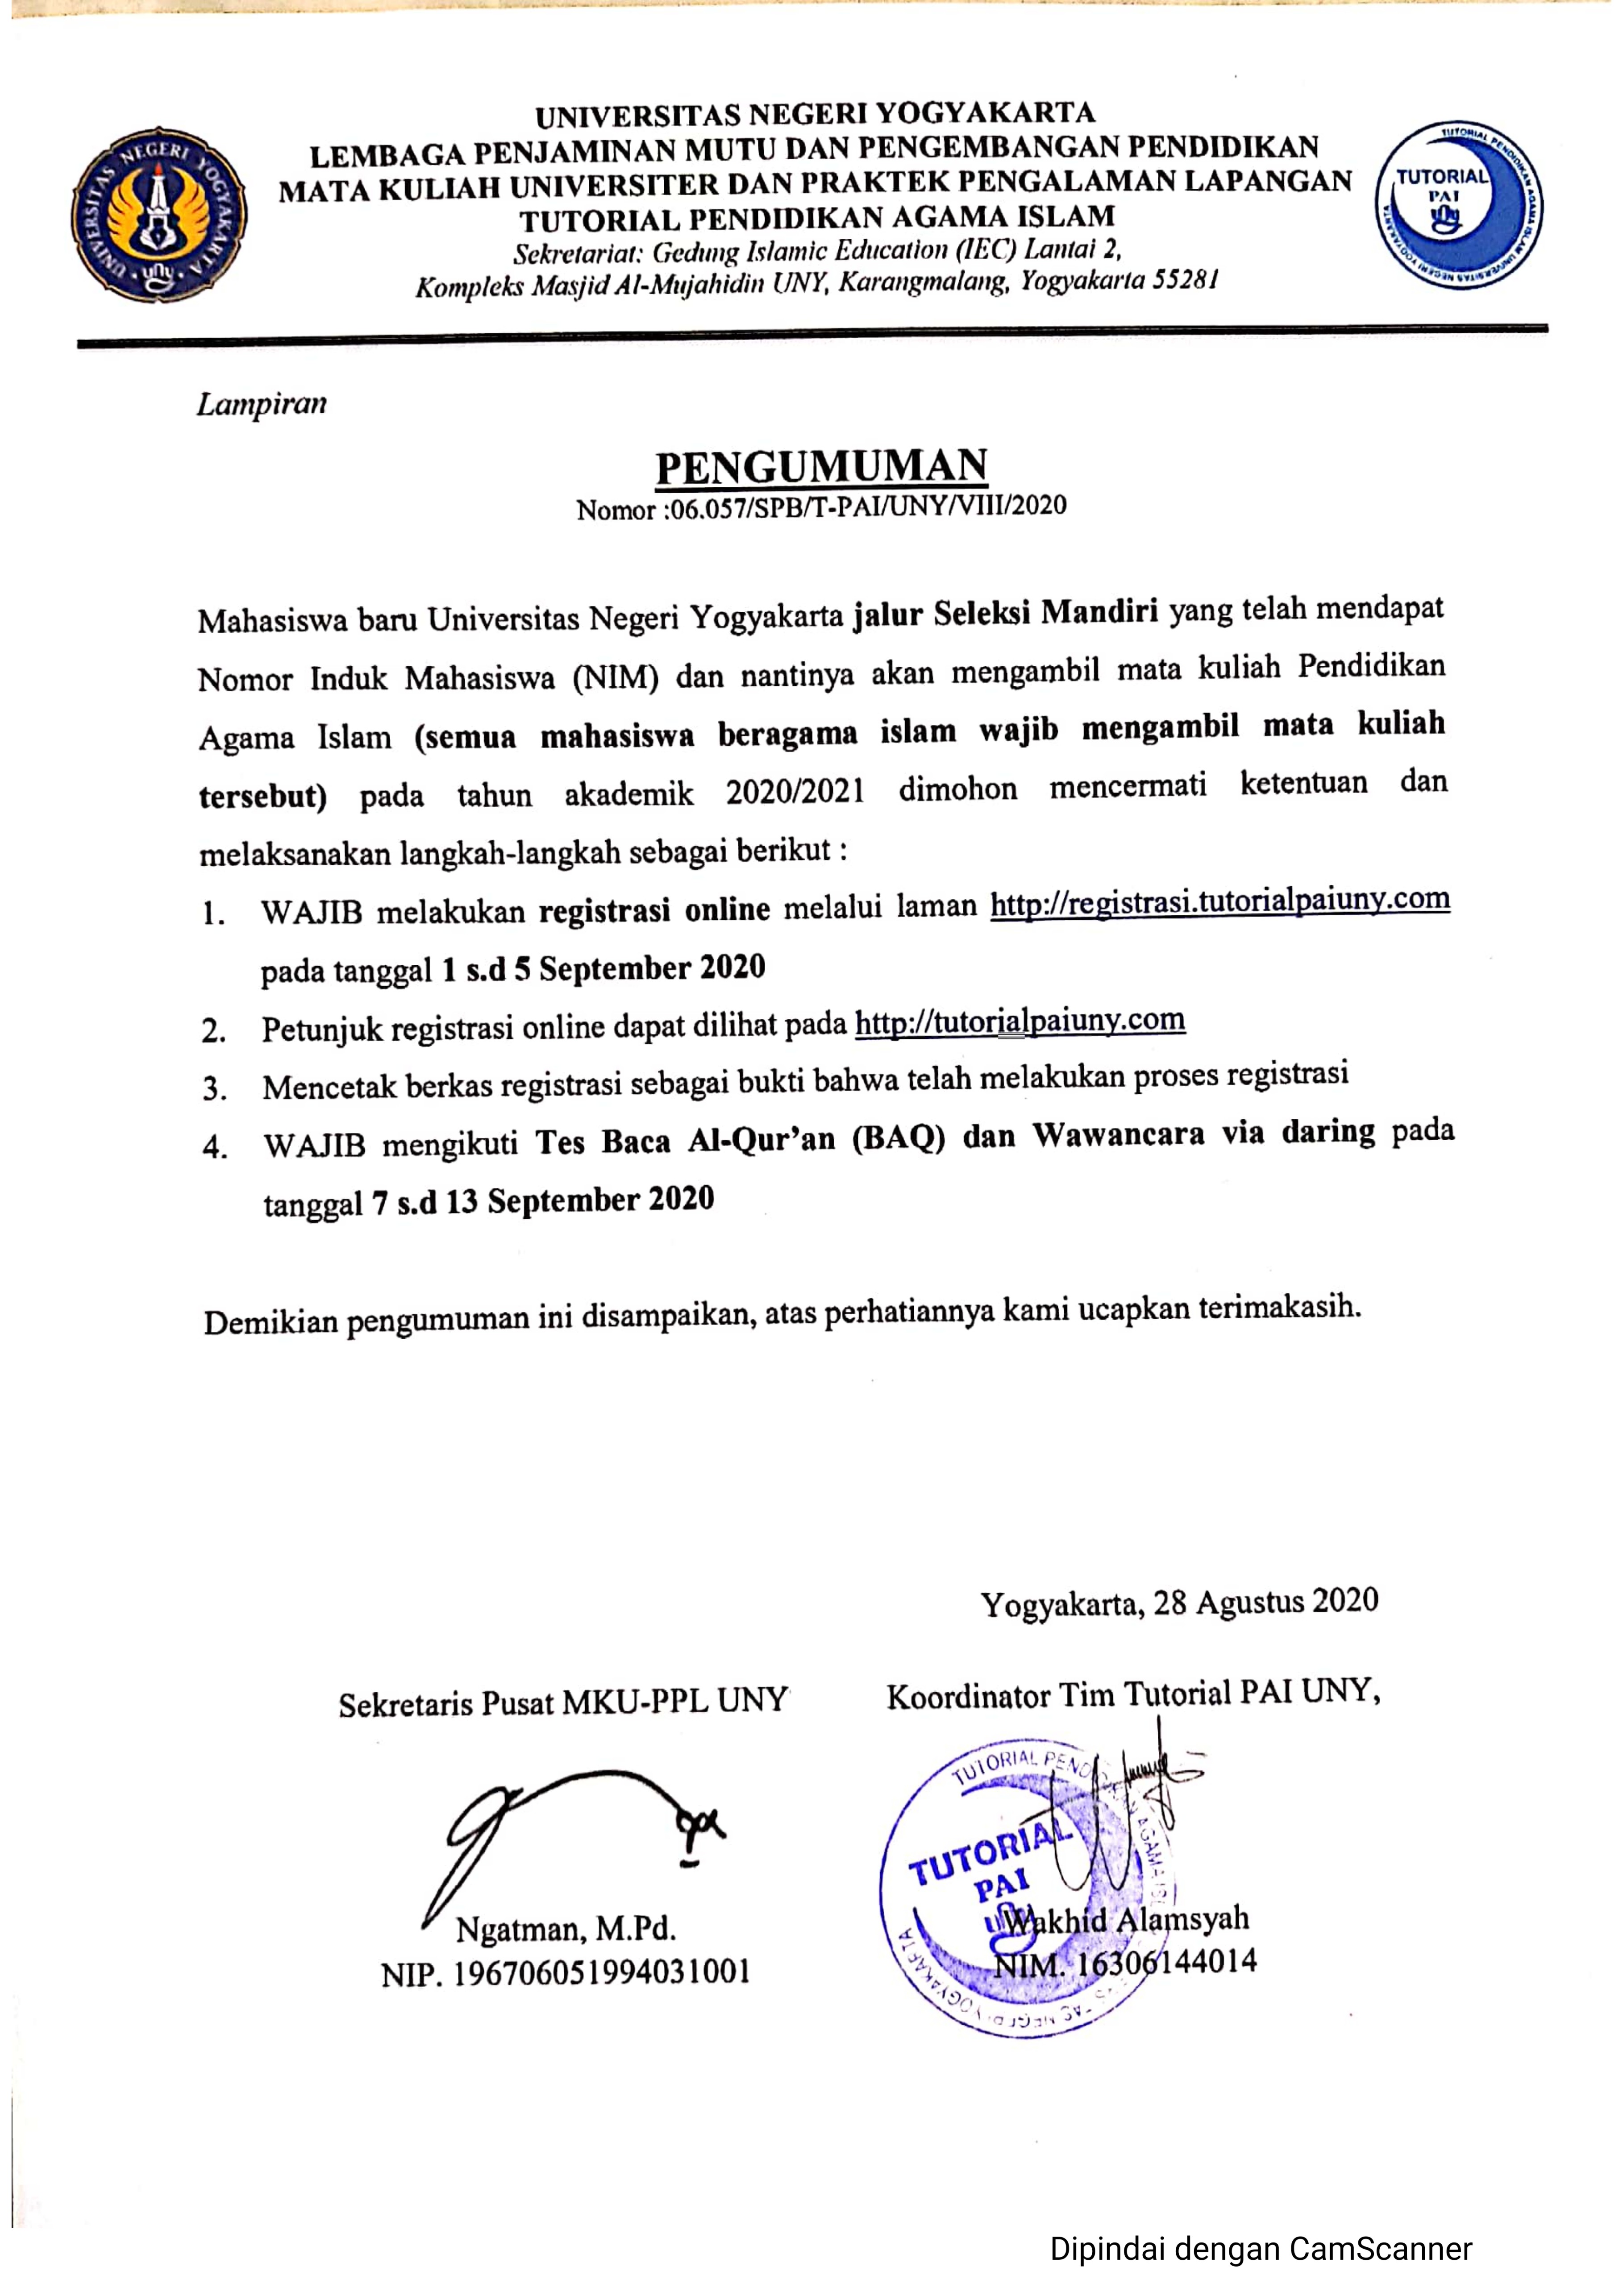 PENDAFTARAN TUTORIAL PENDIDIKAN AGAMA ISLAM BAGI MAHASISWA BARU JALUR SELEKSI MANDIRI 2020